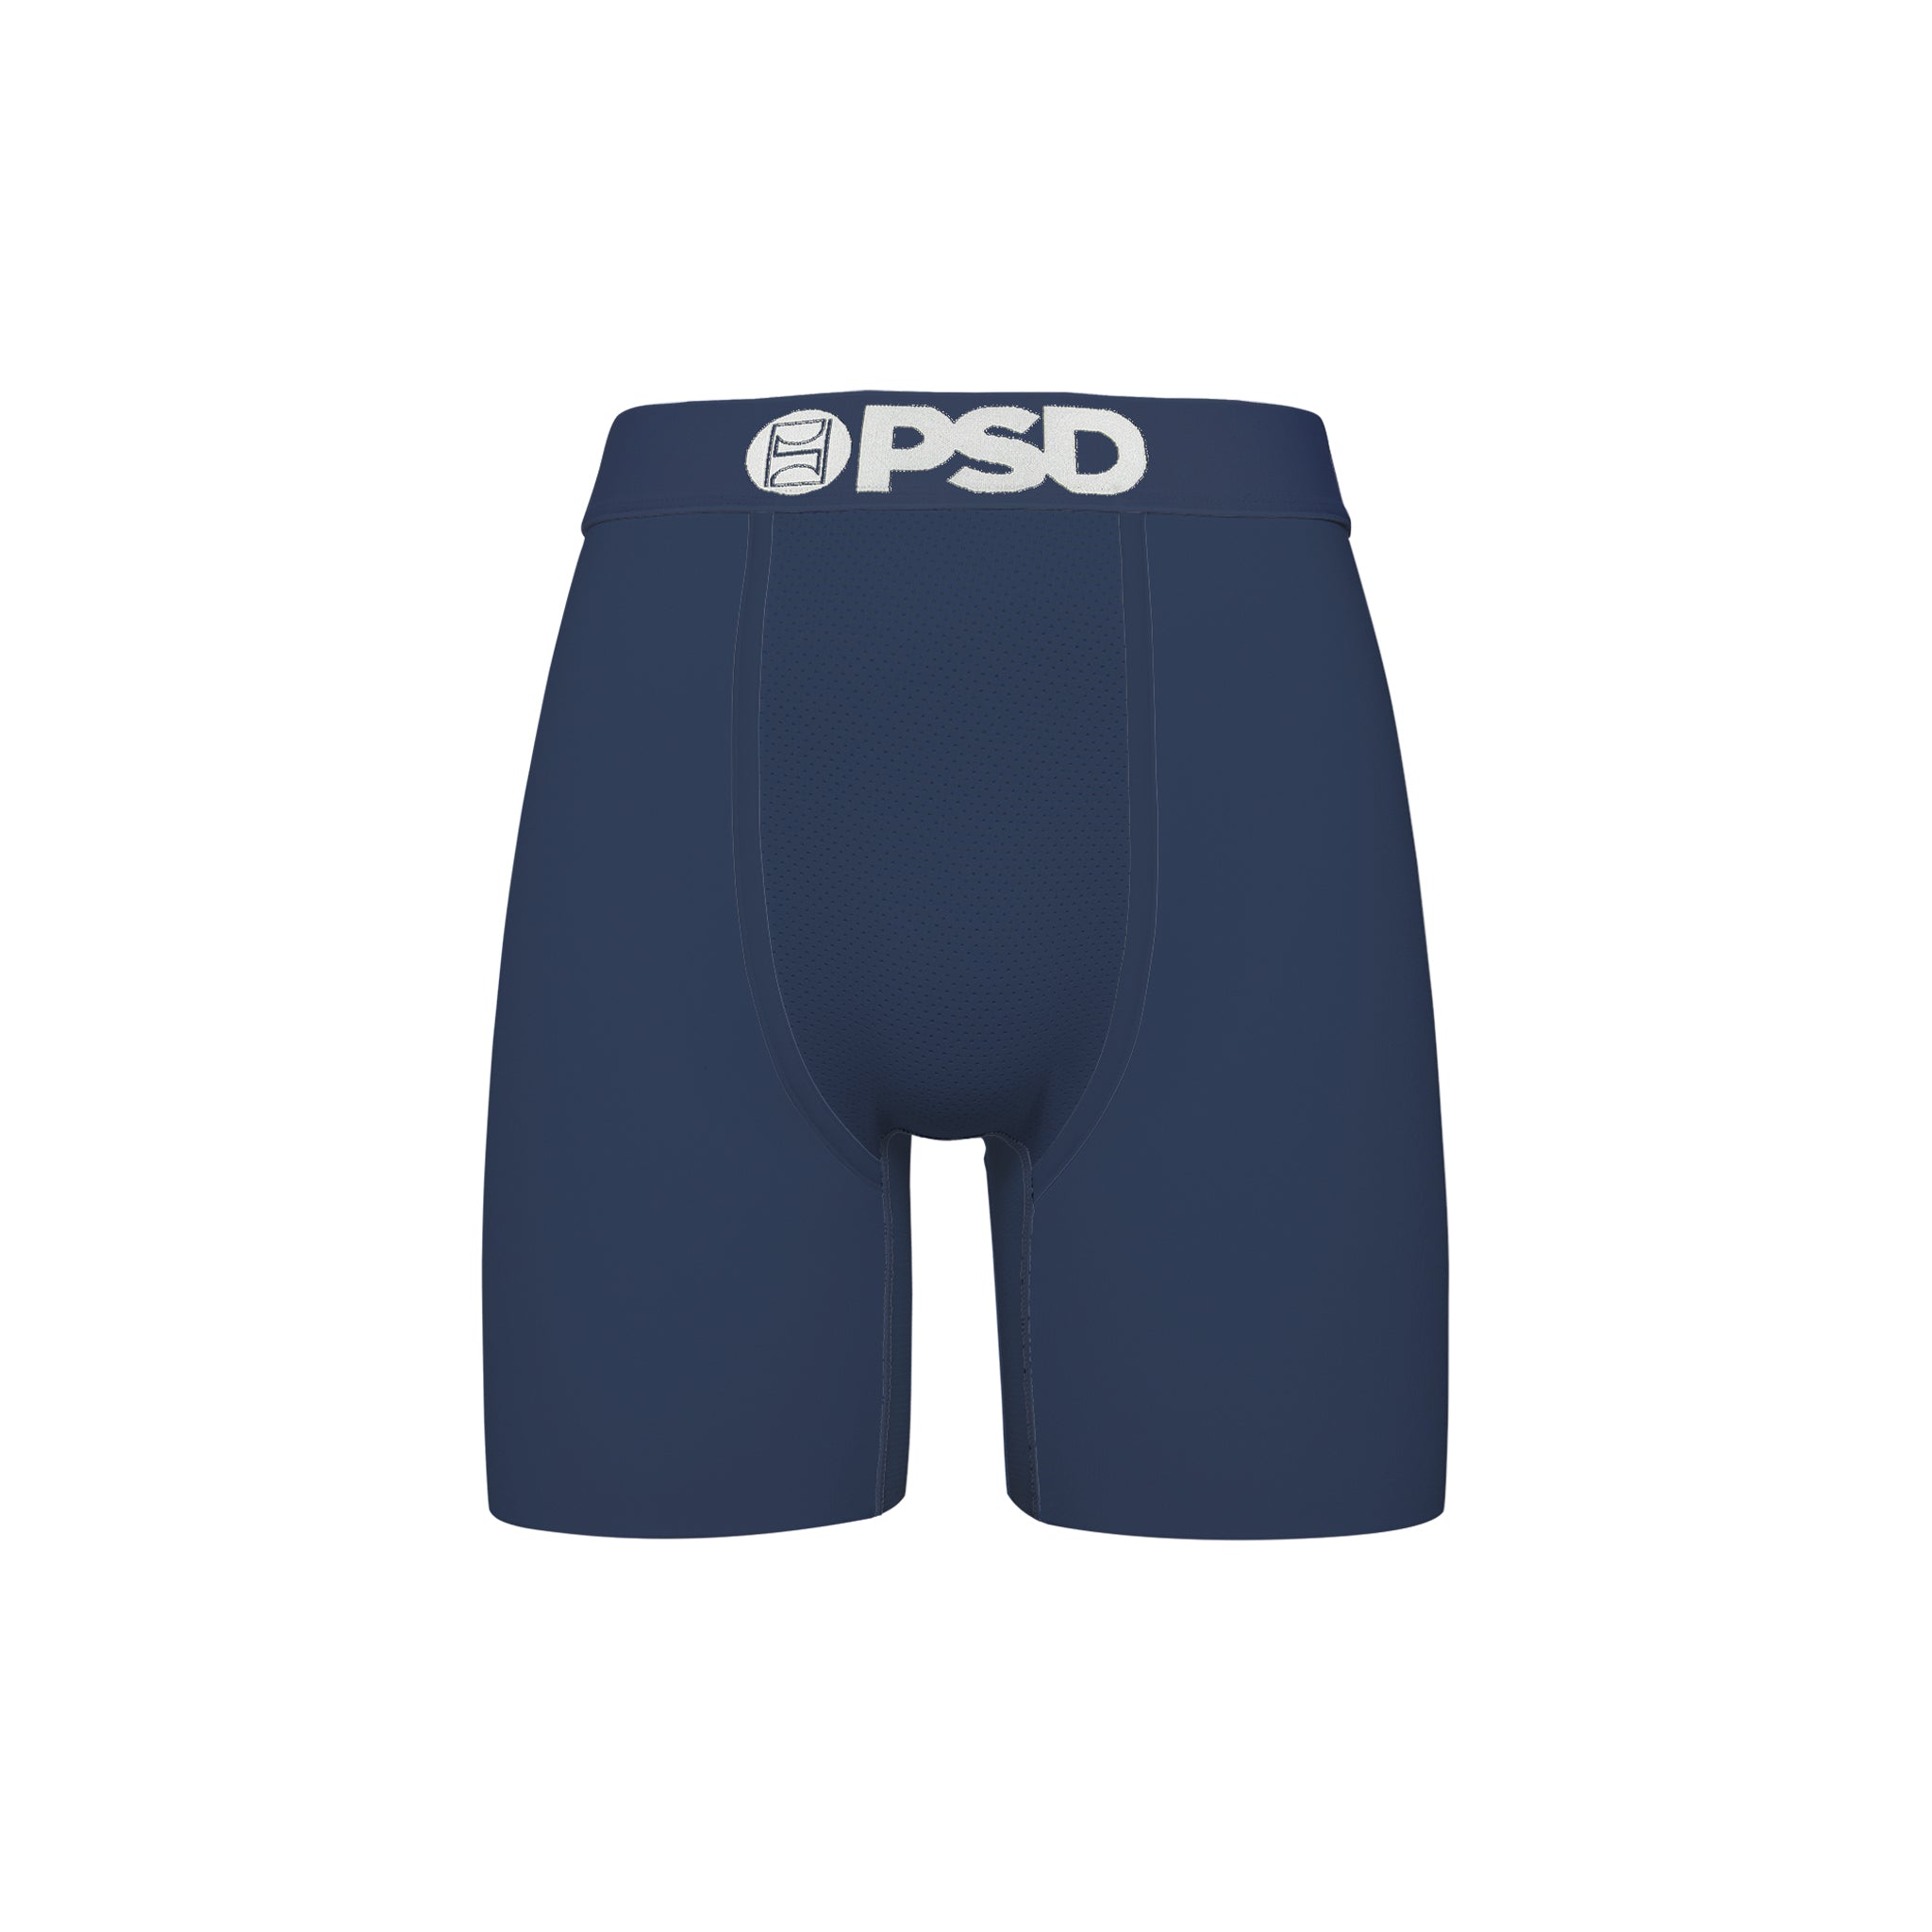 PSD "Navy SLD" Underwear